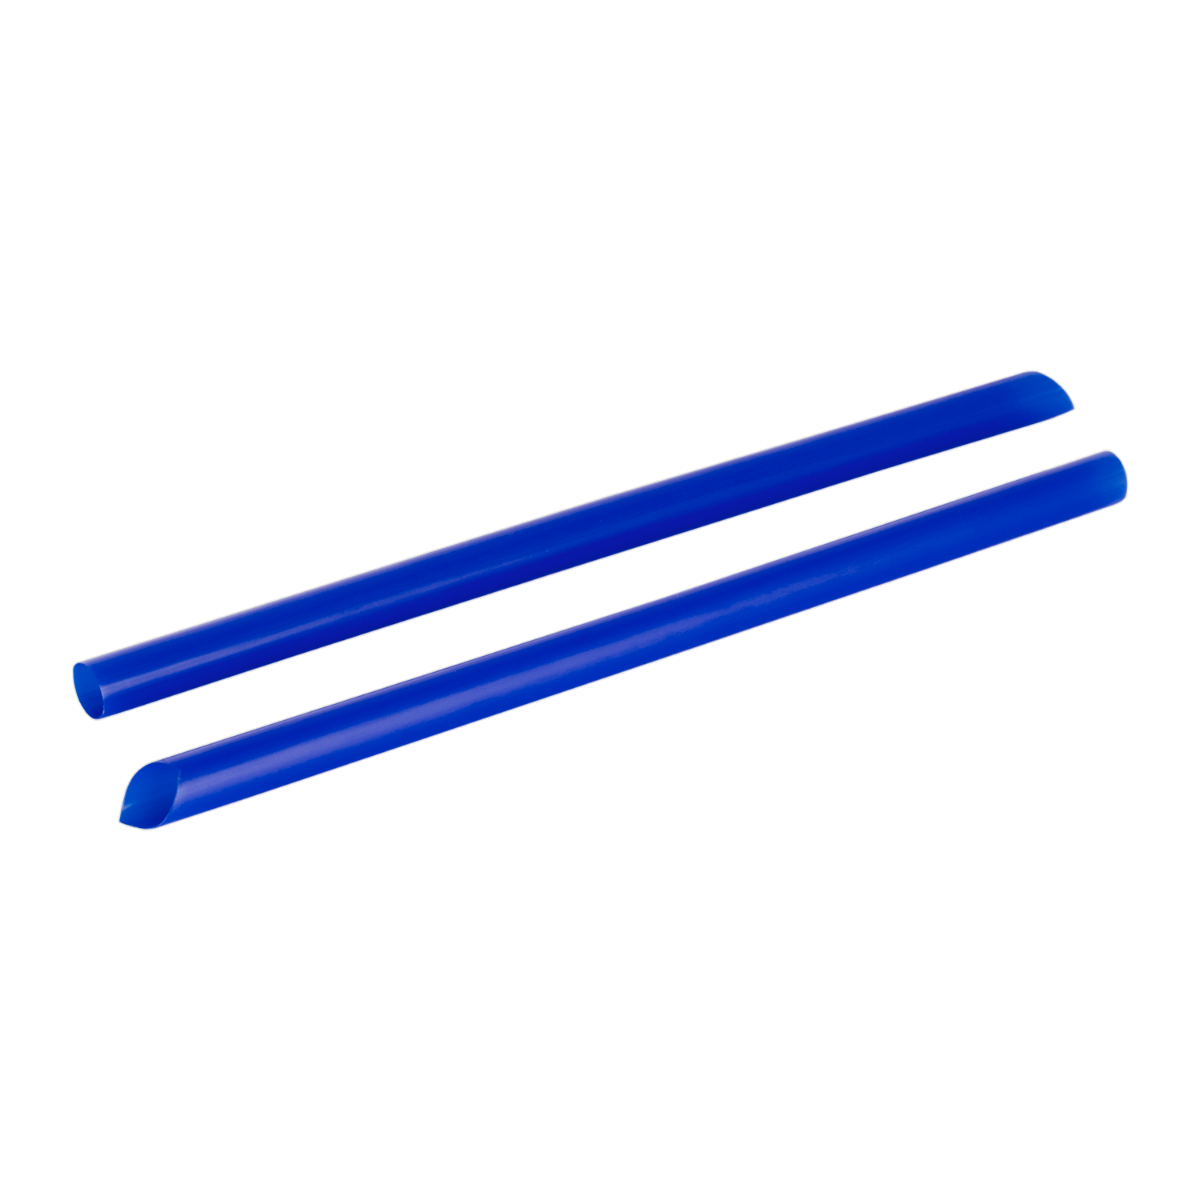 Karat 9" Diagonal Cut Boba Straws Poly Wrapped, Blue - 1,600 pcs